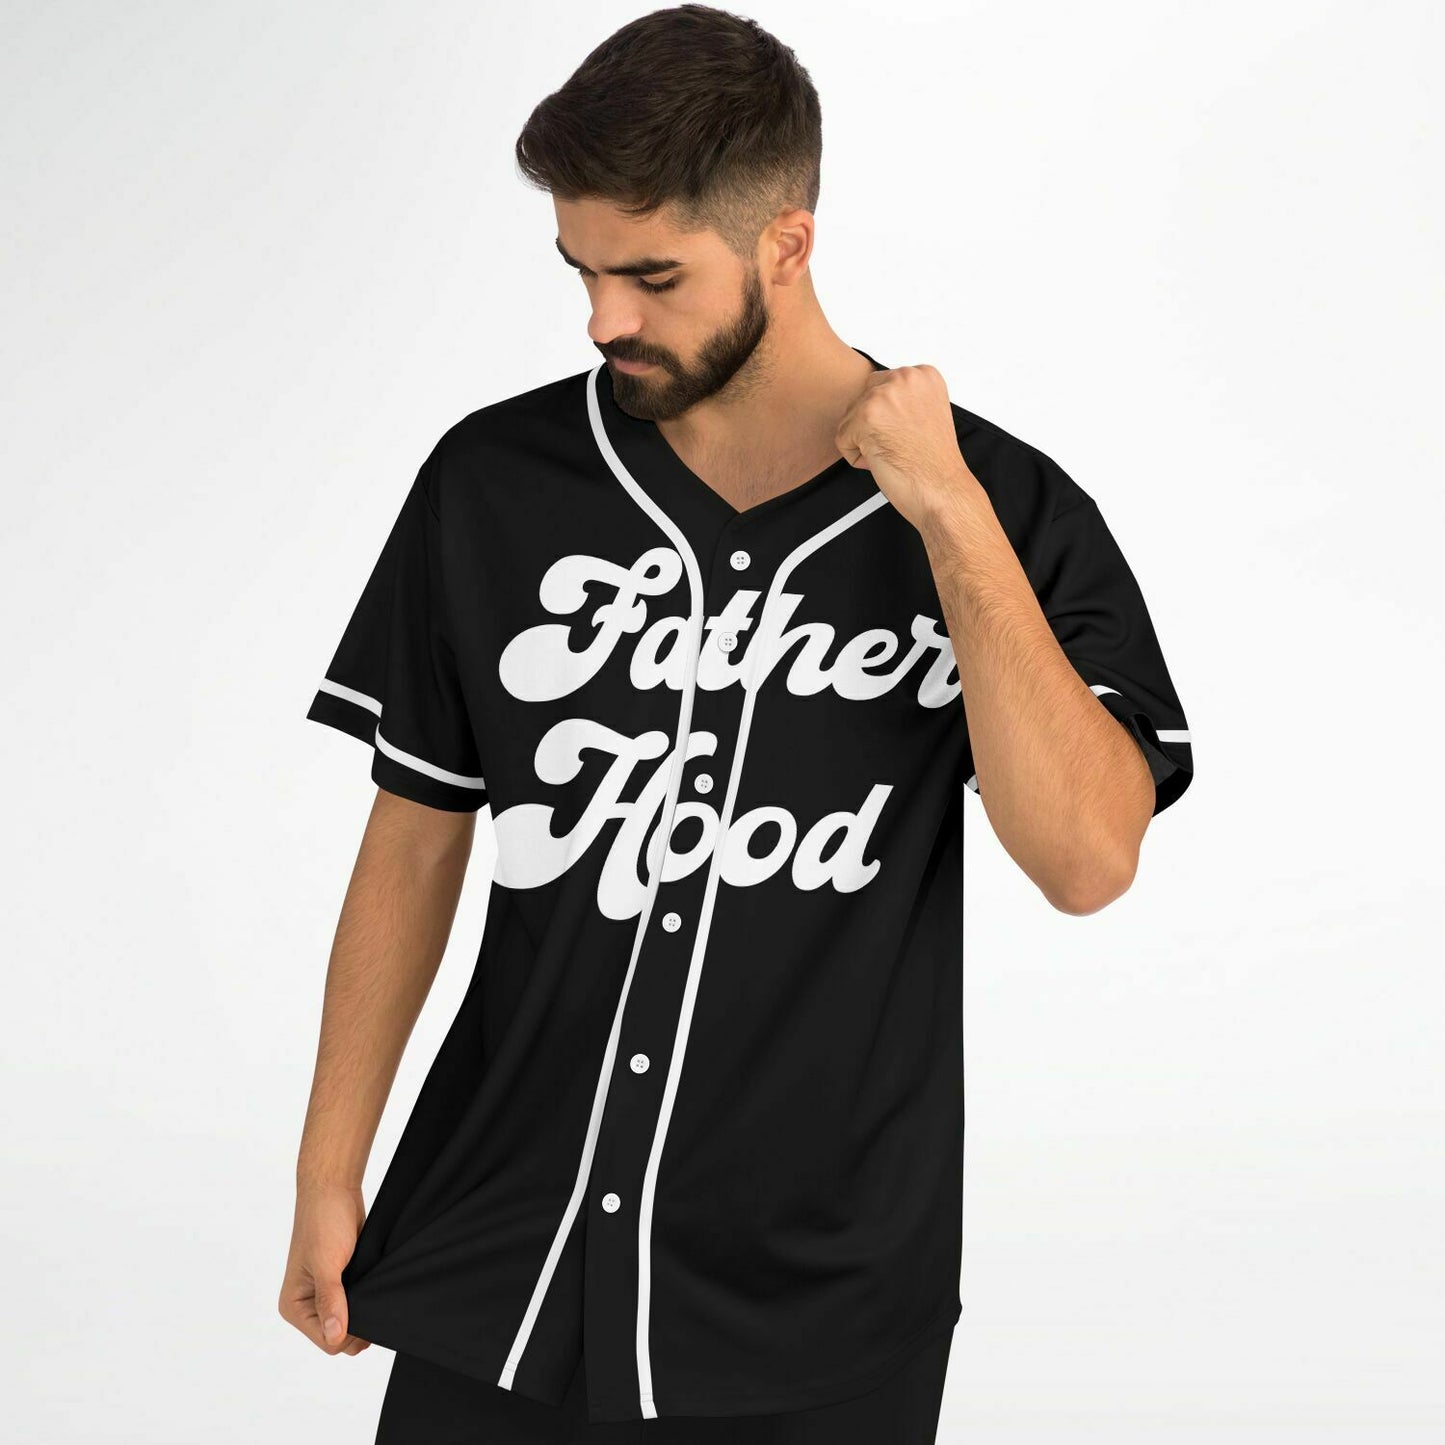 Fatherhood Baseball Jersey - Black & White